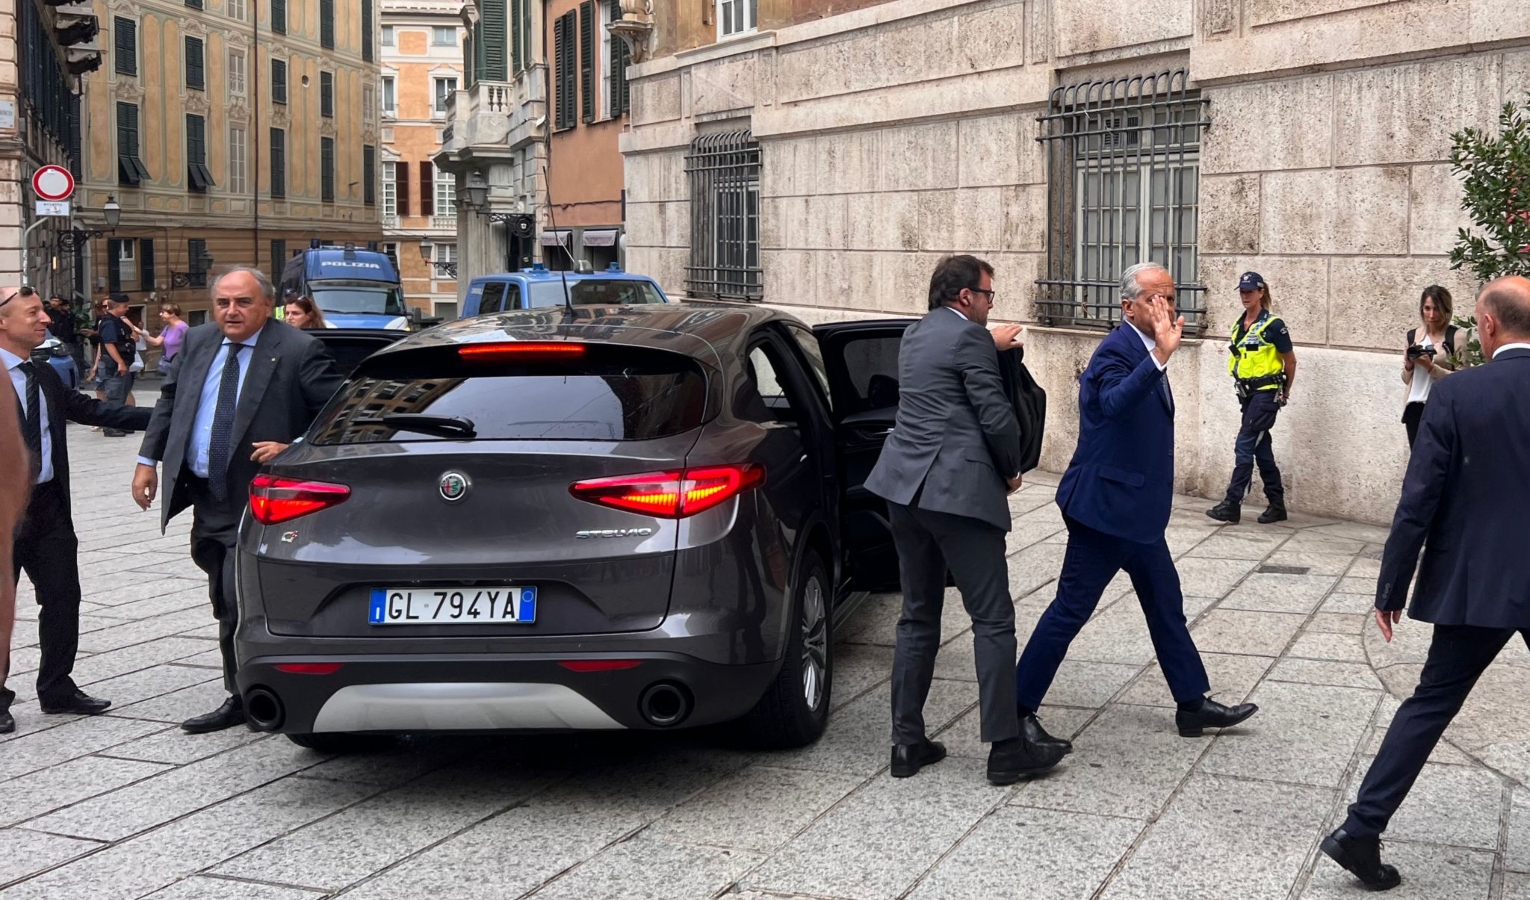 Il ministro Piantedosi arrivato a Genova, si parla di migranti e sicurezza